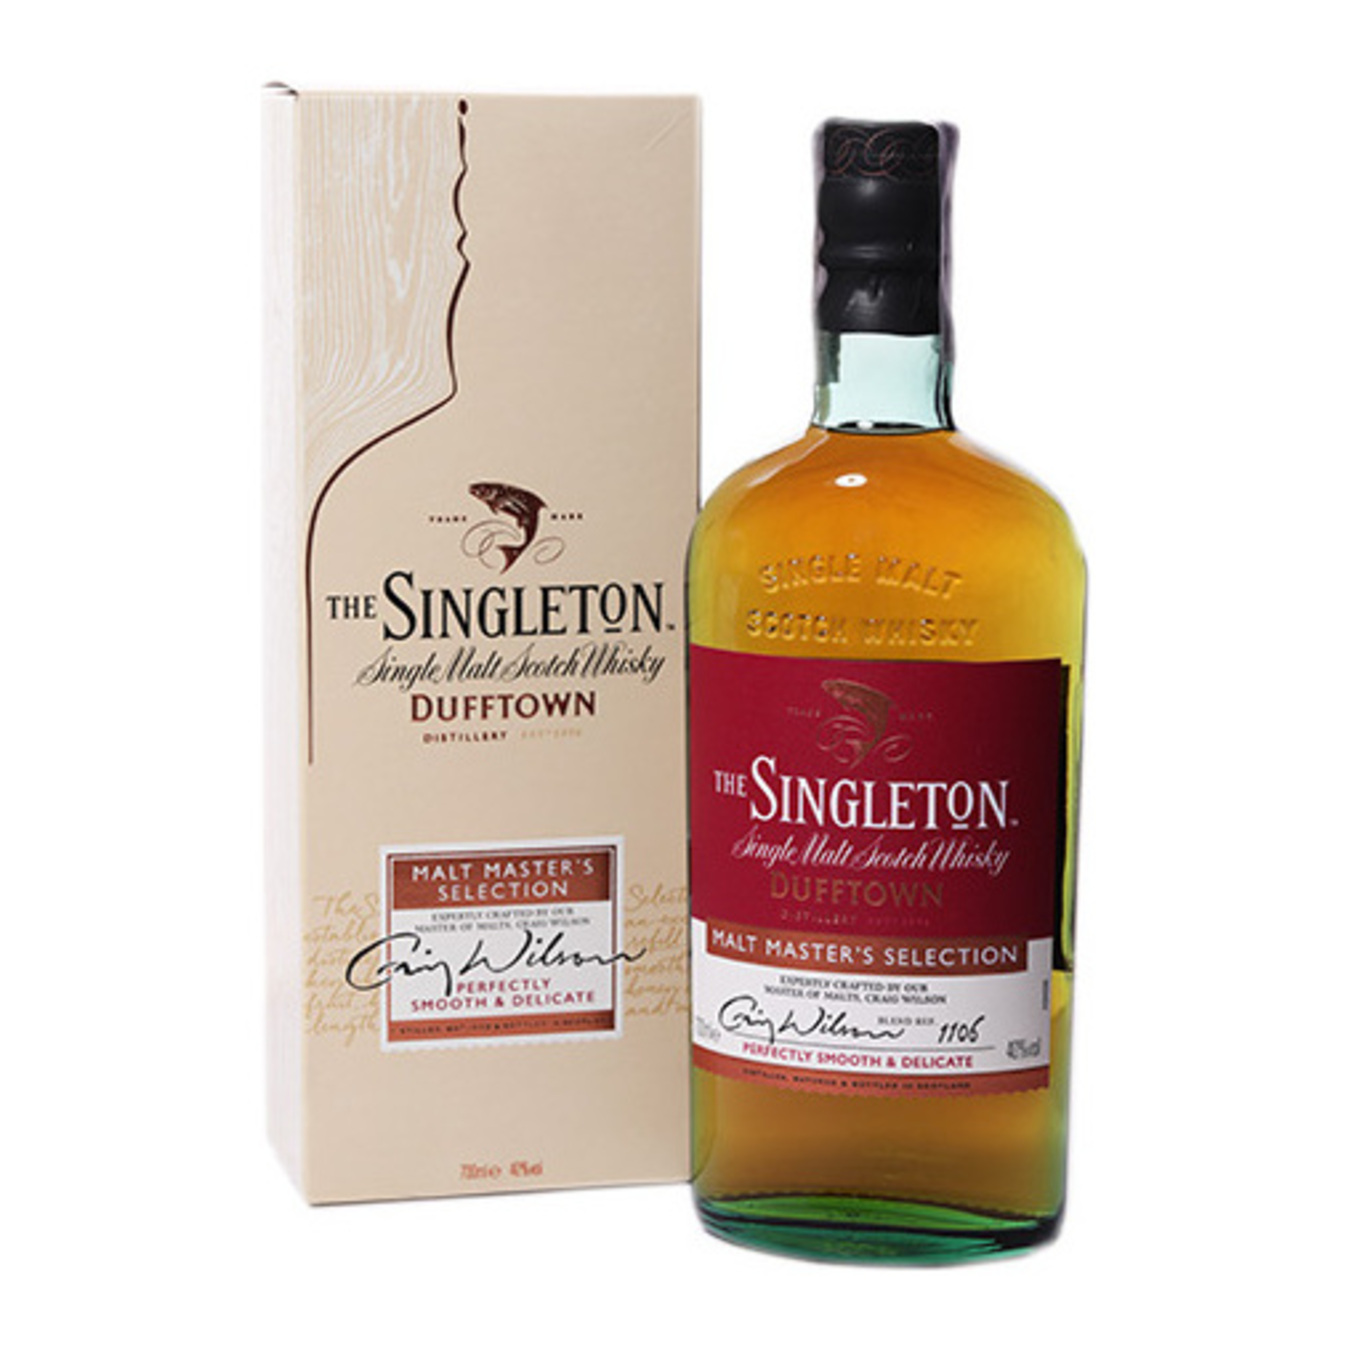 Віскі The Singleton of Dufftown Malt Master Selection 40% 0,7л